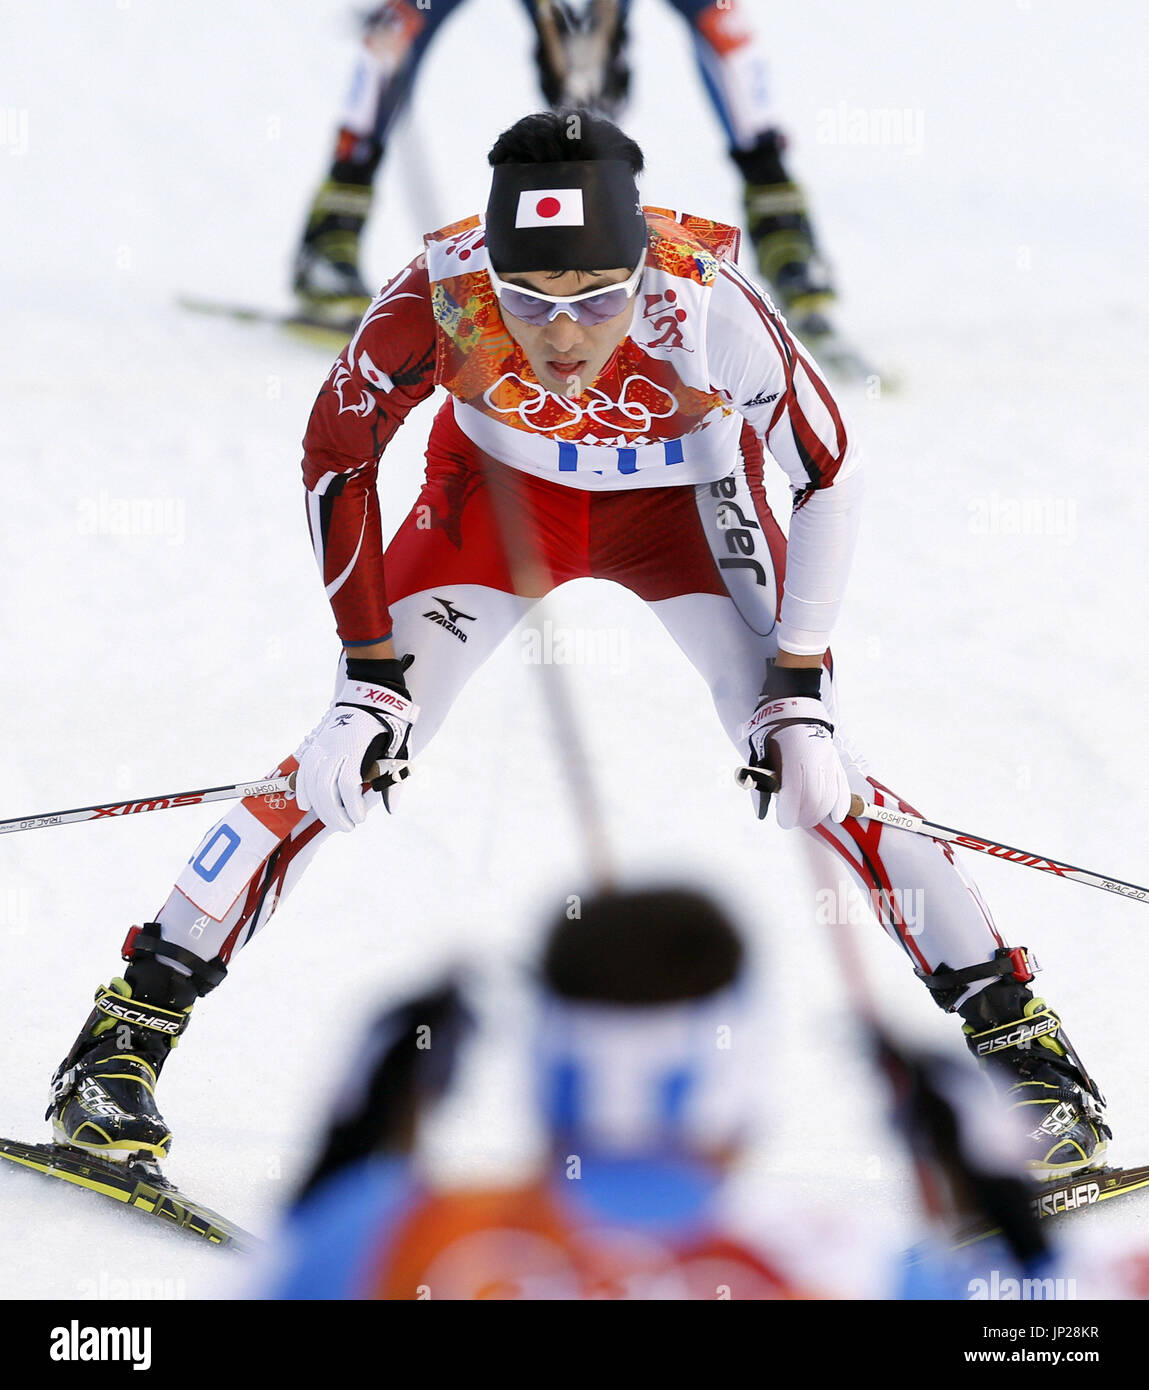 Sotchi, Russie - Japon's Yoshito Watabe termine en 15e place dans le combiné nordique de l'événement Tremplin normal individuel aux Jeux Olympiques d'hiver à Sotchi, en Russie, le 12 février 2014. (Kyodo) Banque D'Images